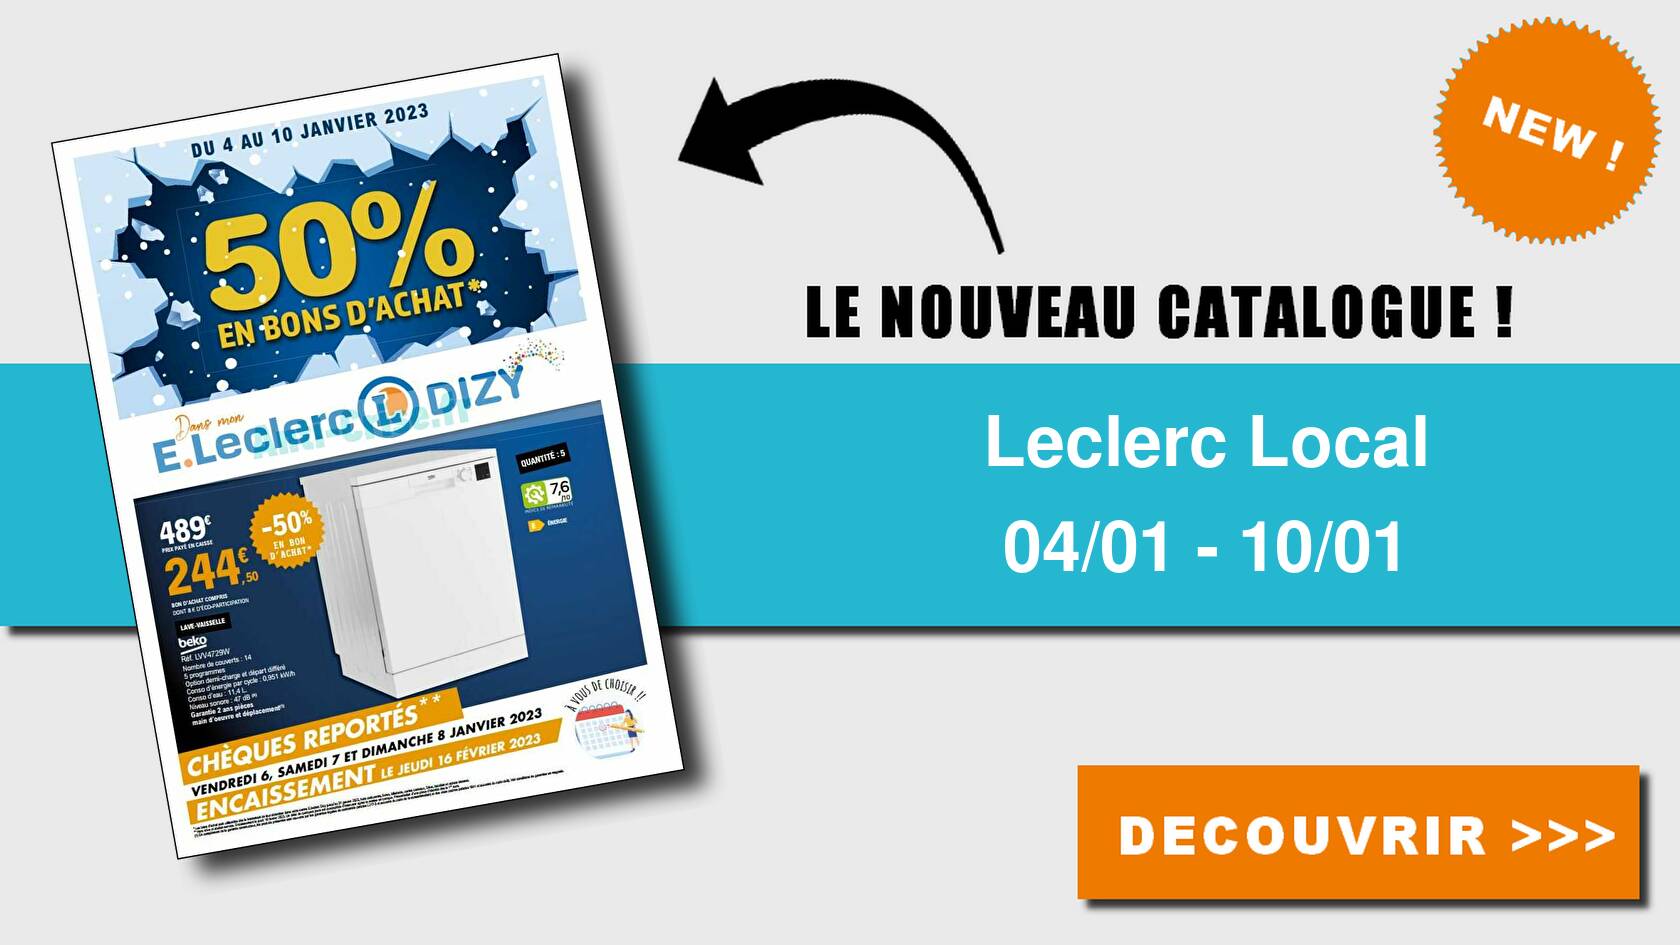 Anticrise.fr Catalogue Leclerc Local du 04 au 10 janvier 2023 (Dizy